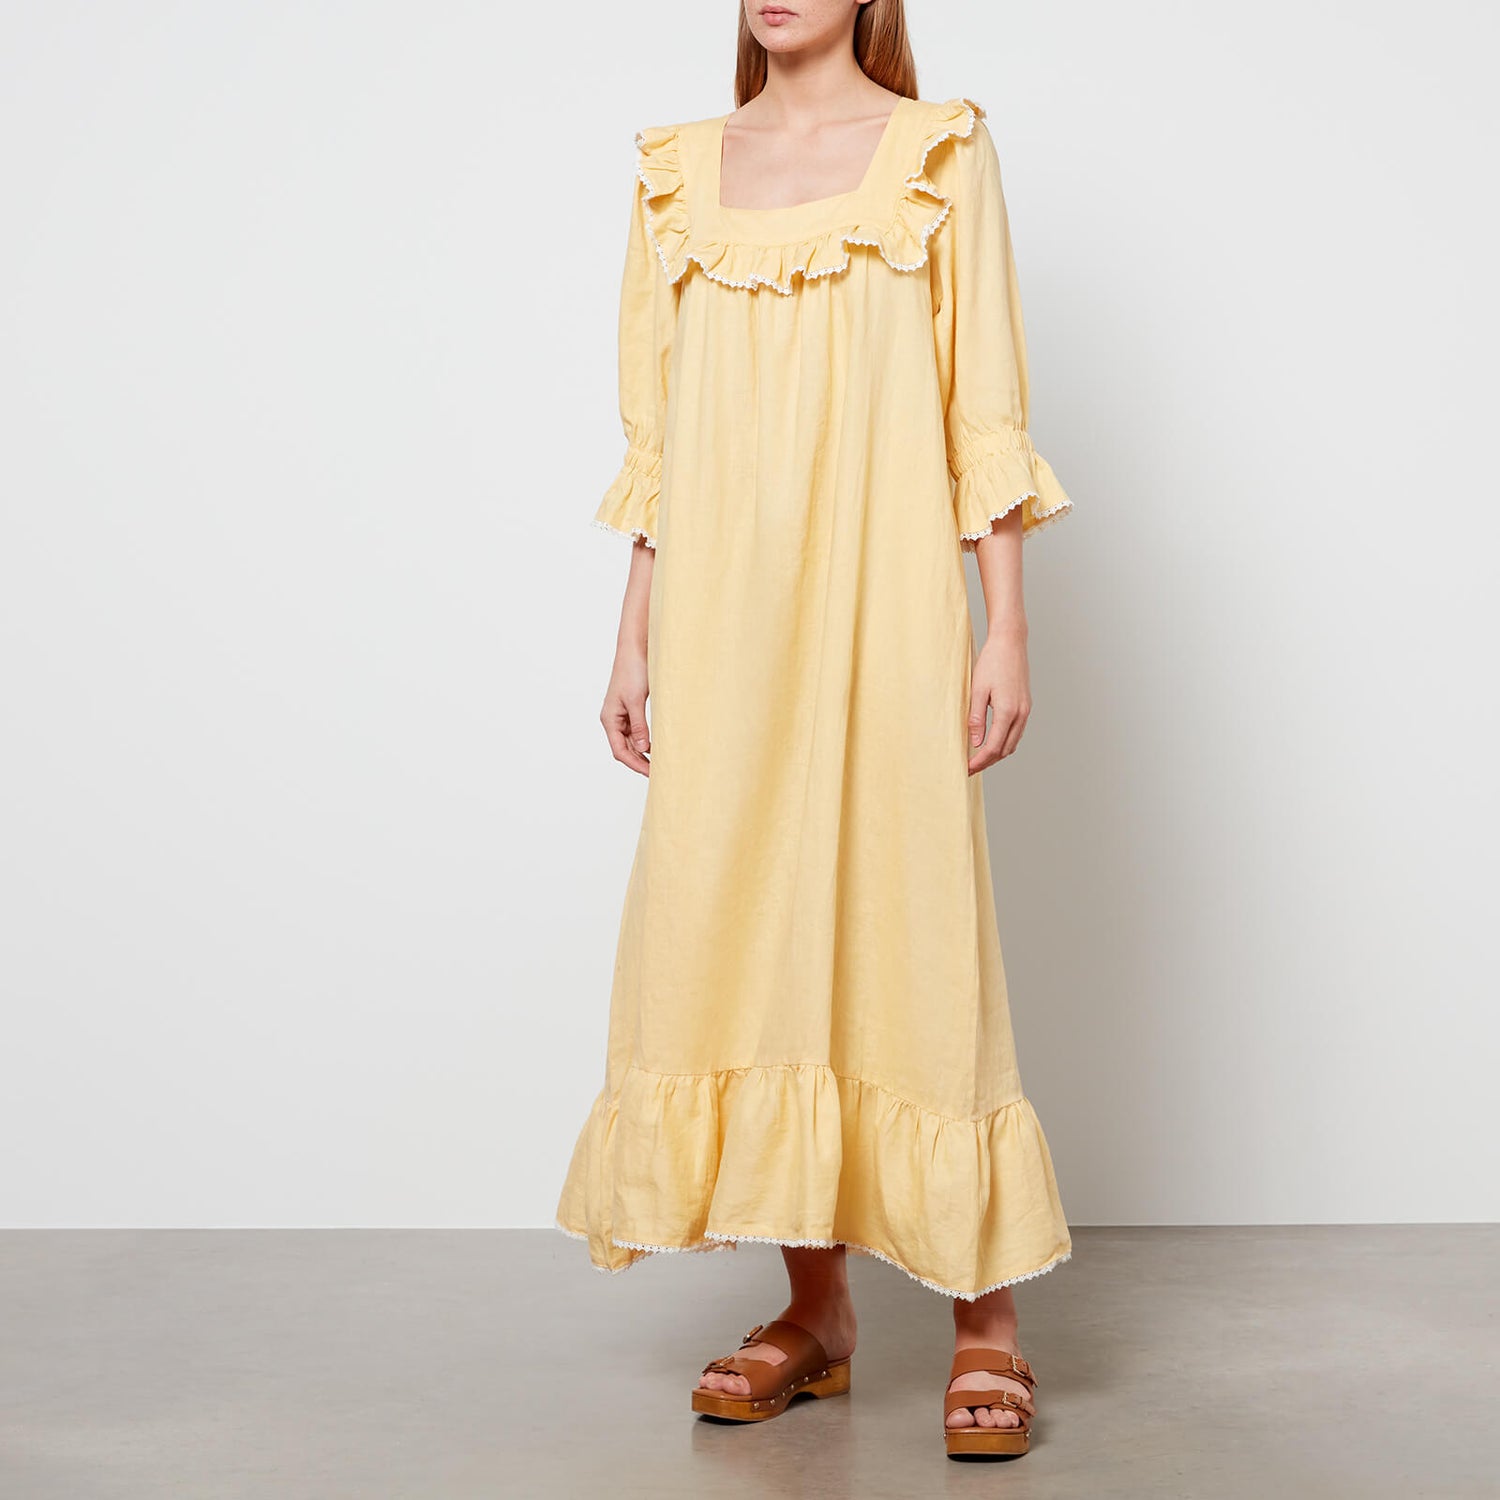 Meadows Women's Valerian Dress - Butter